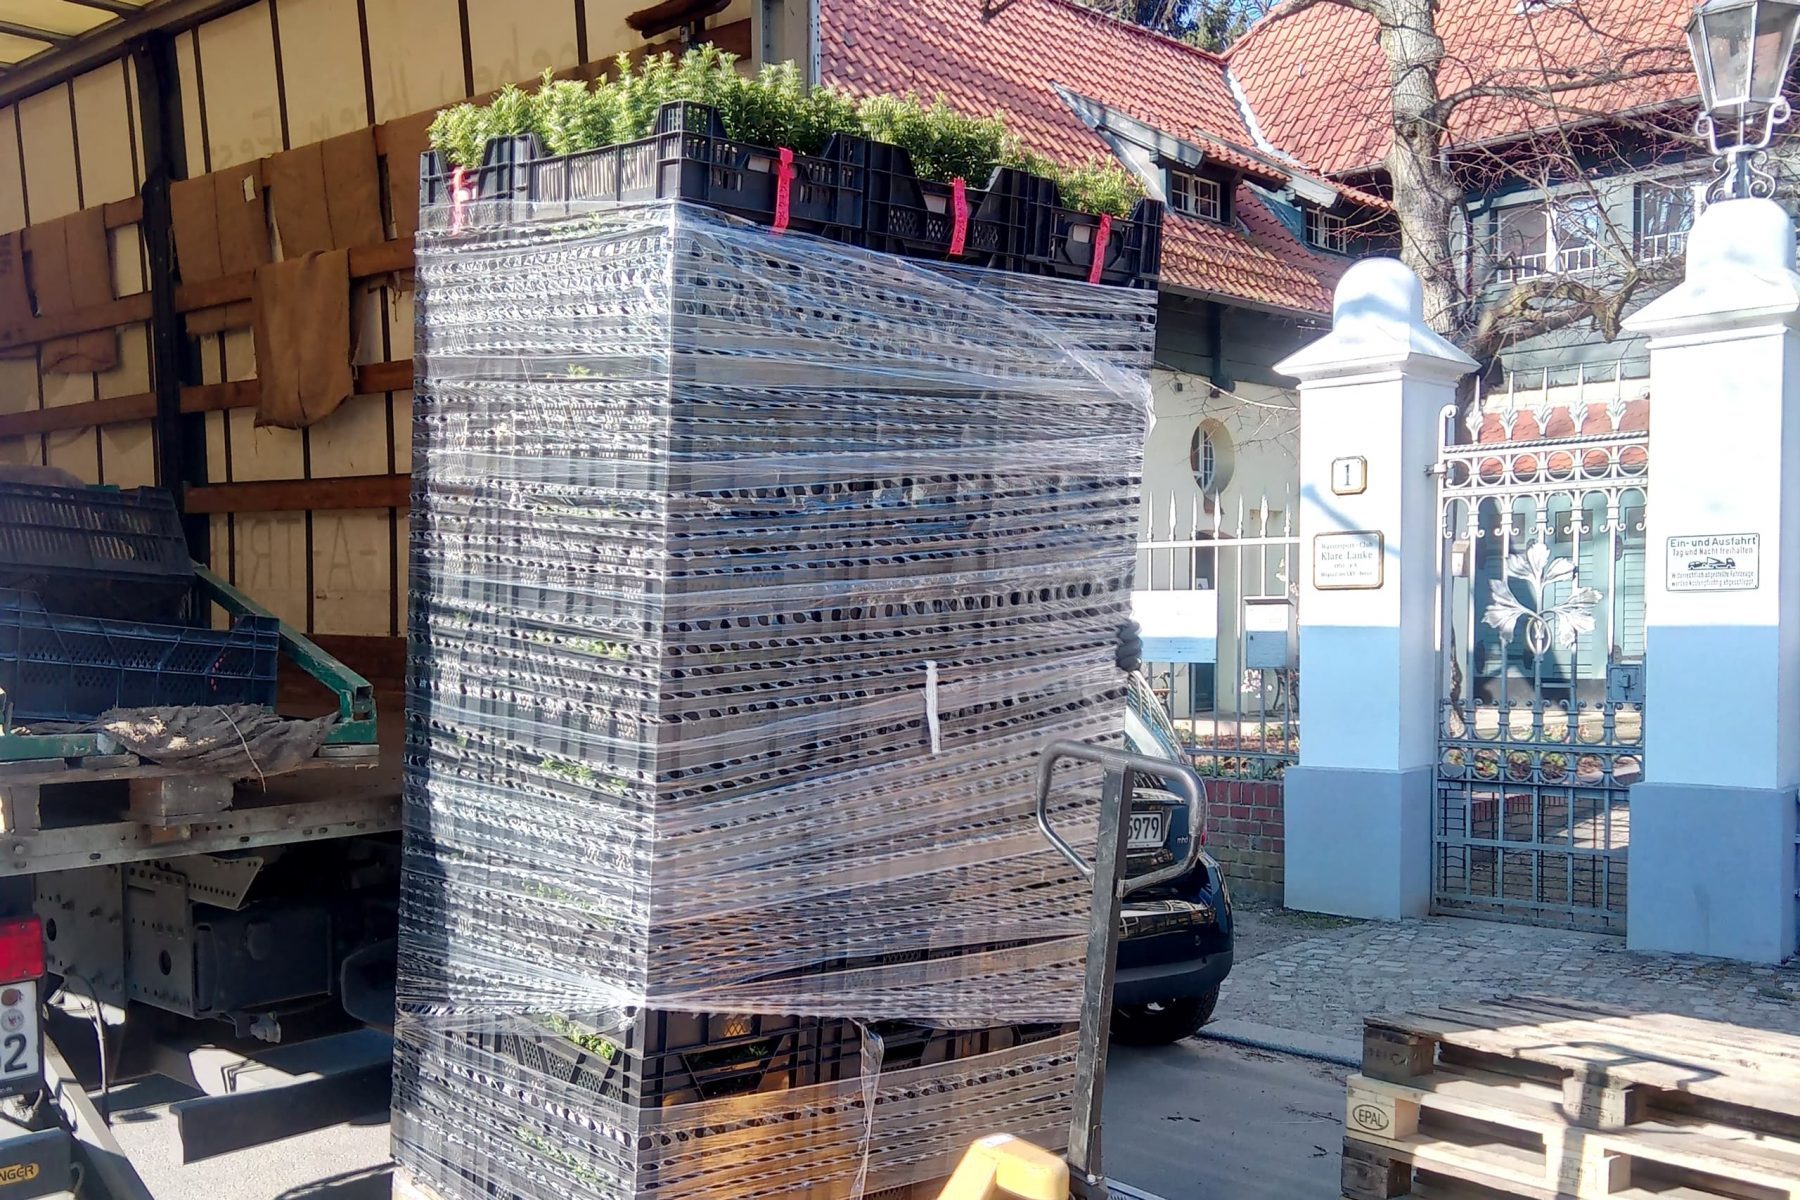 In Plastik verpackte Kartons auf einer Palette mit grünen Pflanzen in einem LKW.